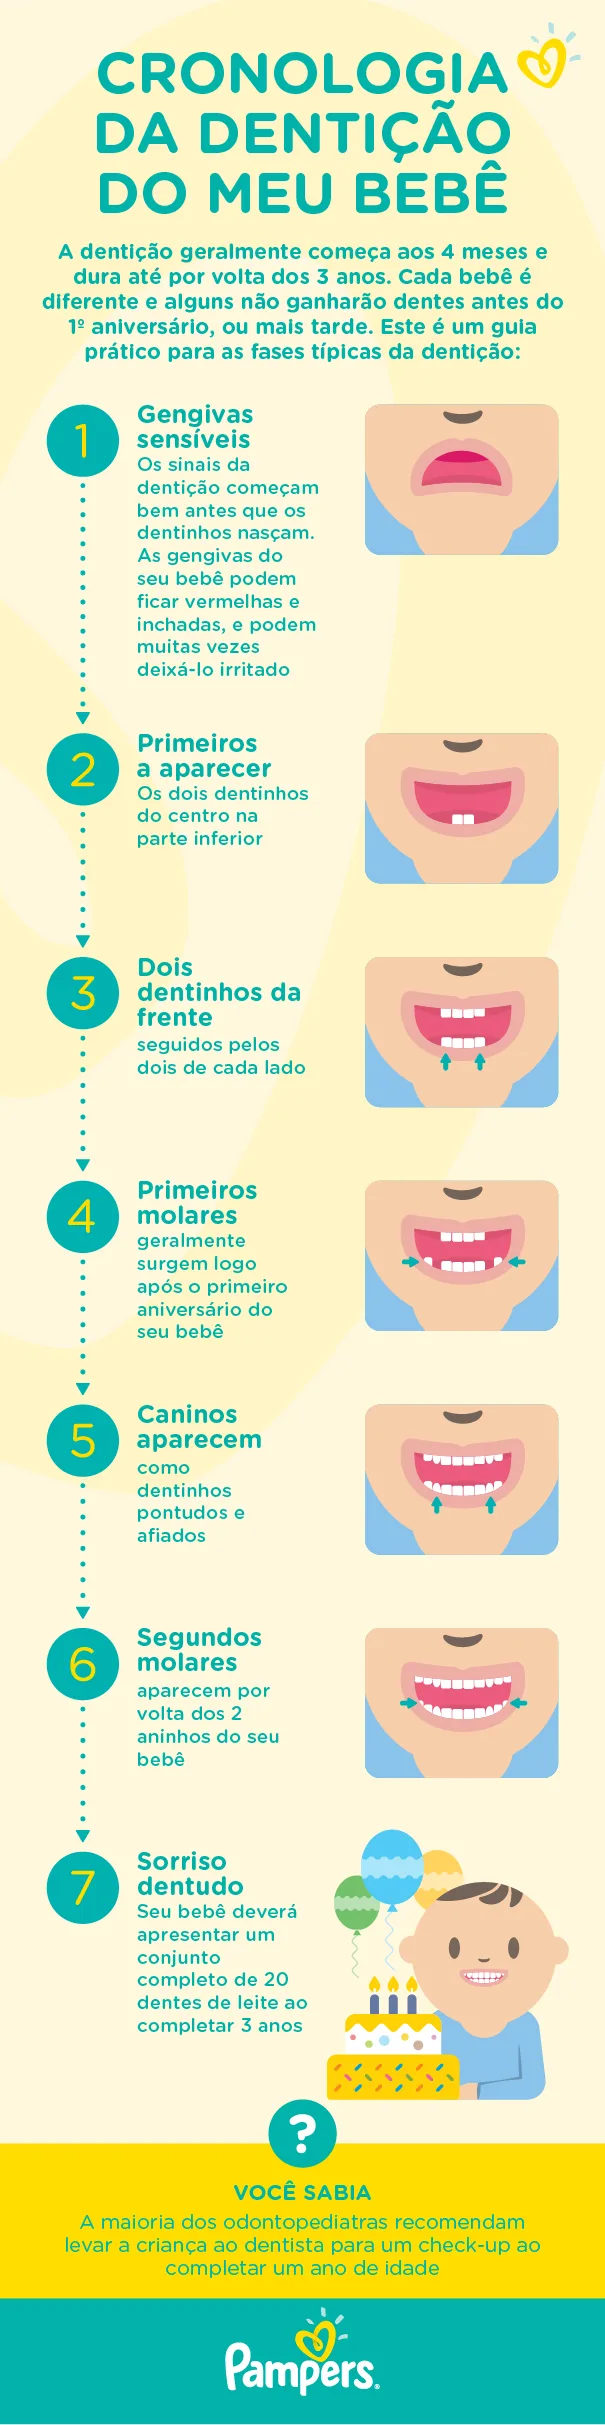 Conheça as diferentes etapas da dentição do seu bebê